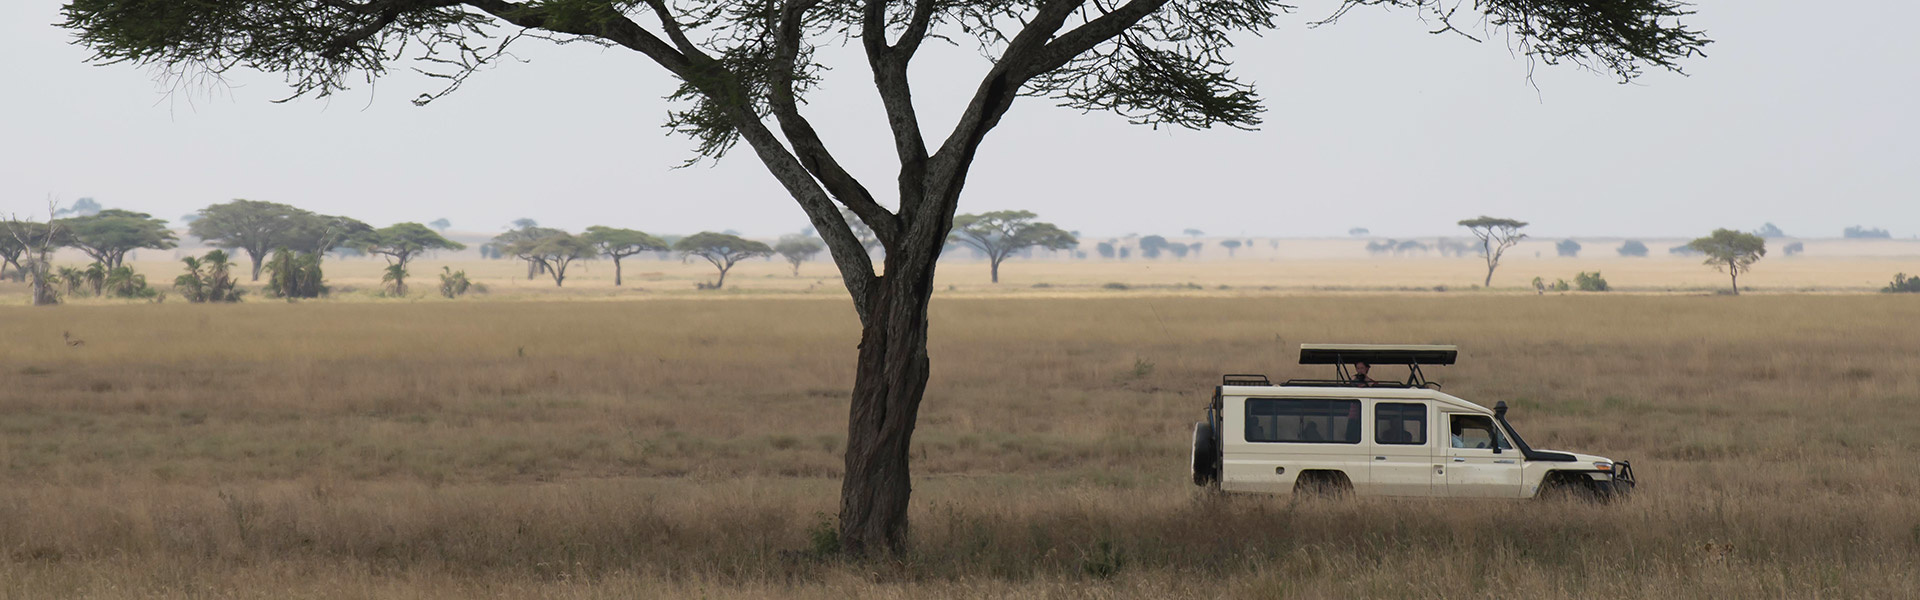 Partez pour un safari & un voyage sur-mesure en Afrique | Sous l'Acacia